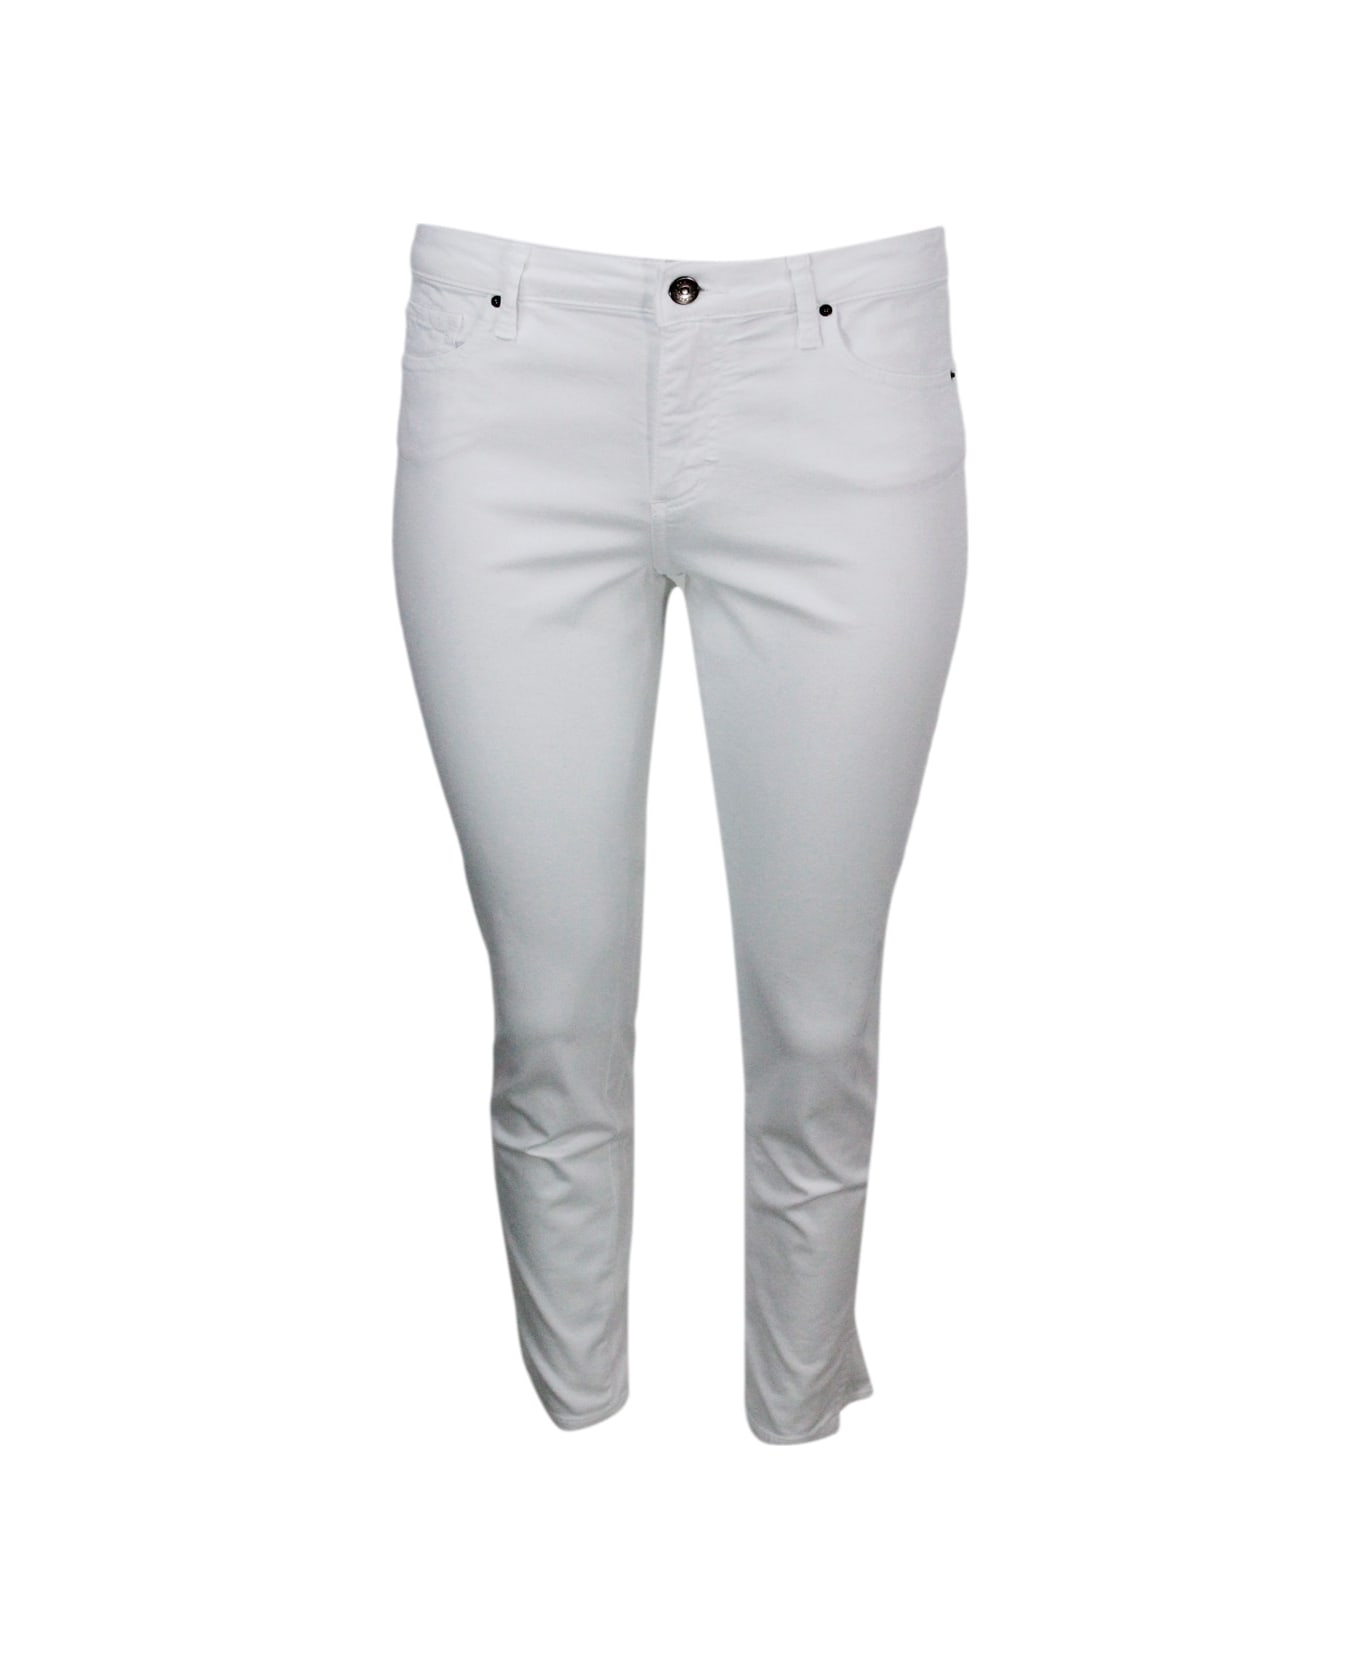 Armani Collezioni 5-pocket Trousers In Soft Stretch Cotton Super Skinny Capri. Zip And Button Closure. - White